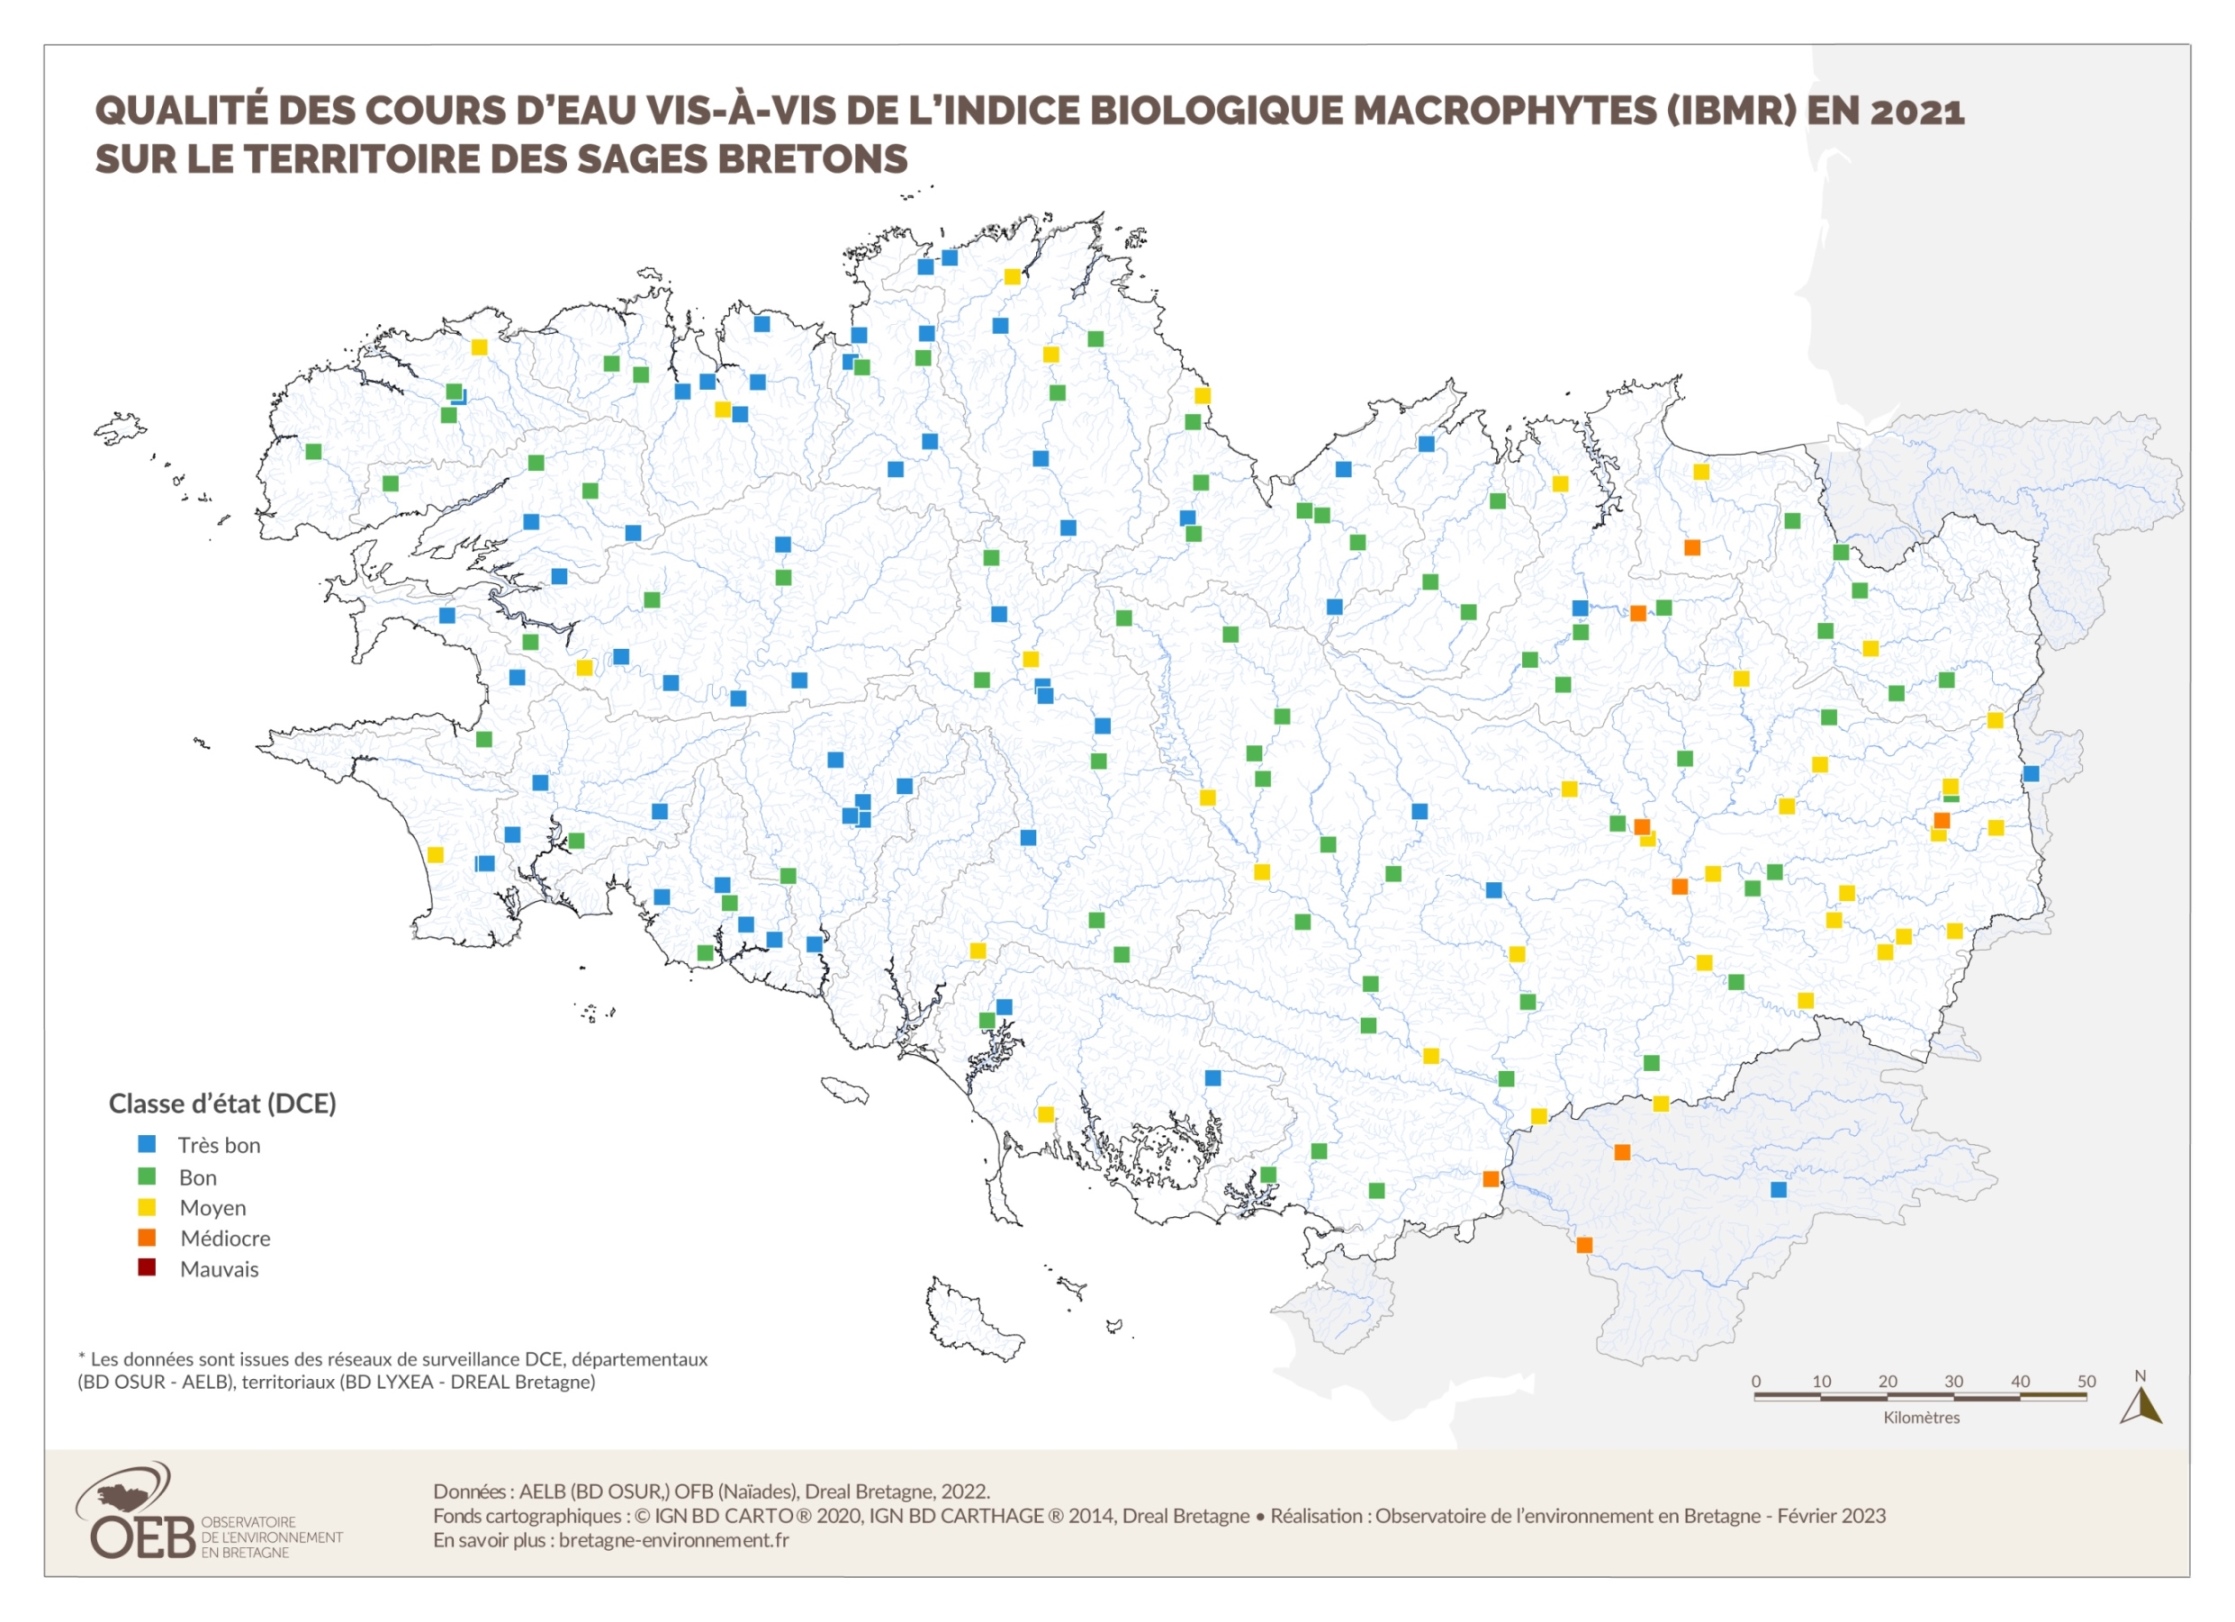 Qualité des cours d'eau bretons vis-à-vis de l'indice biologique macrophytes (IBMR) en 2021